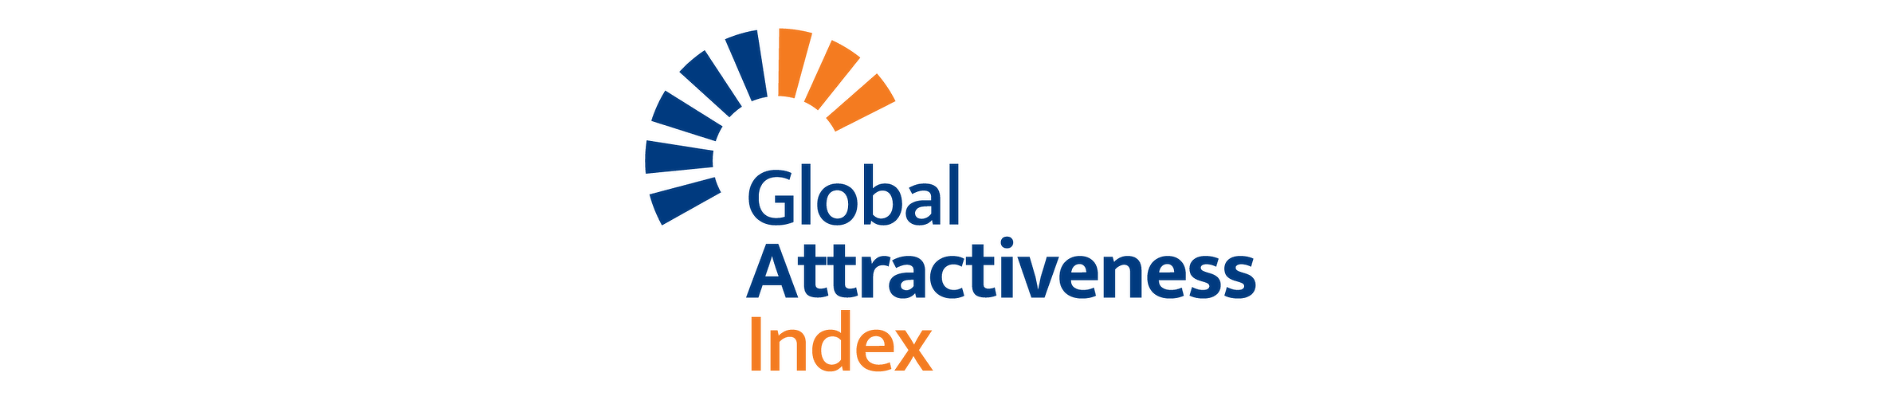 Global Attractiveness Index 2021